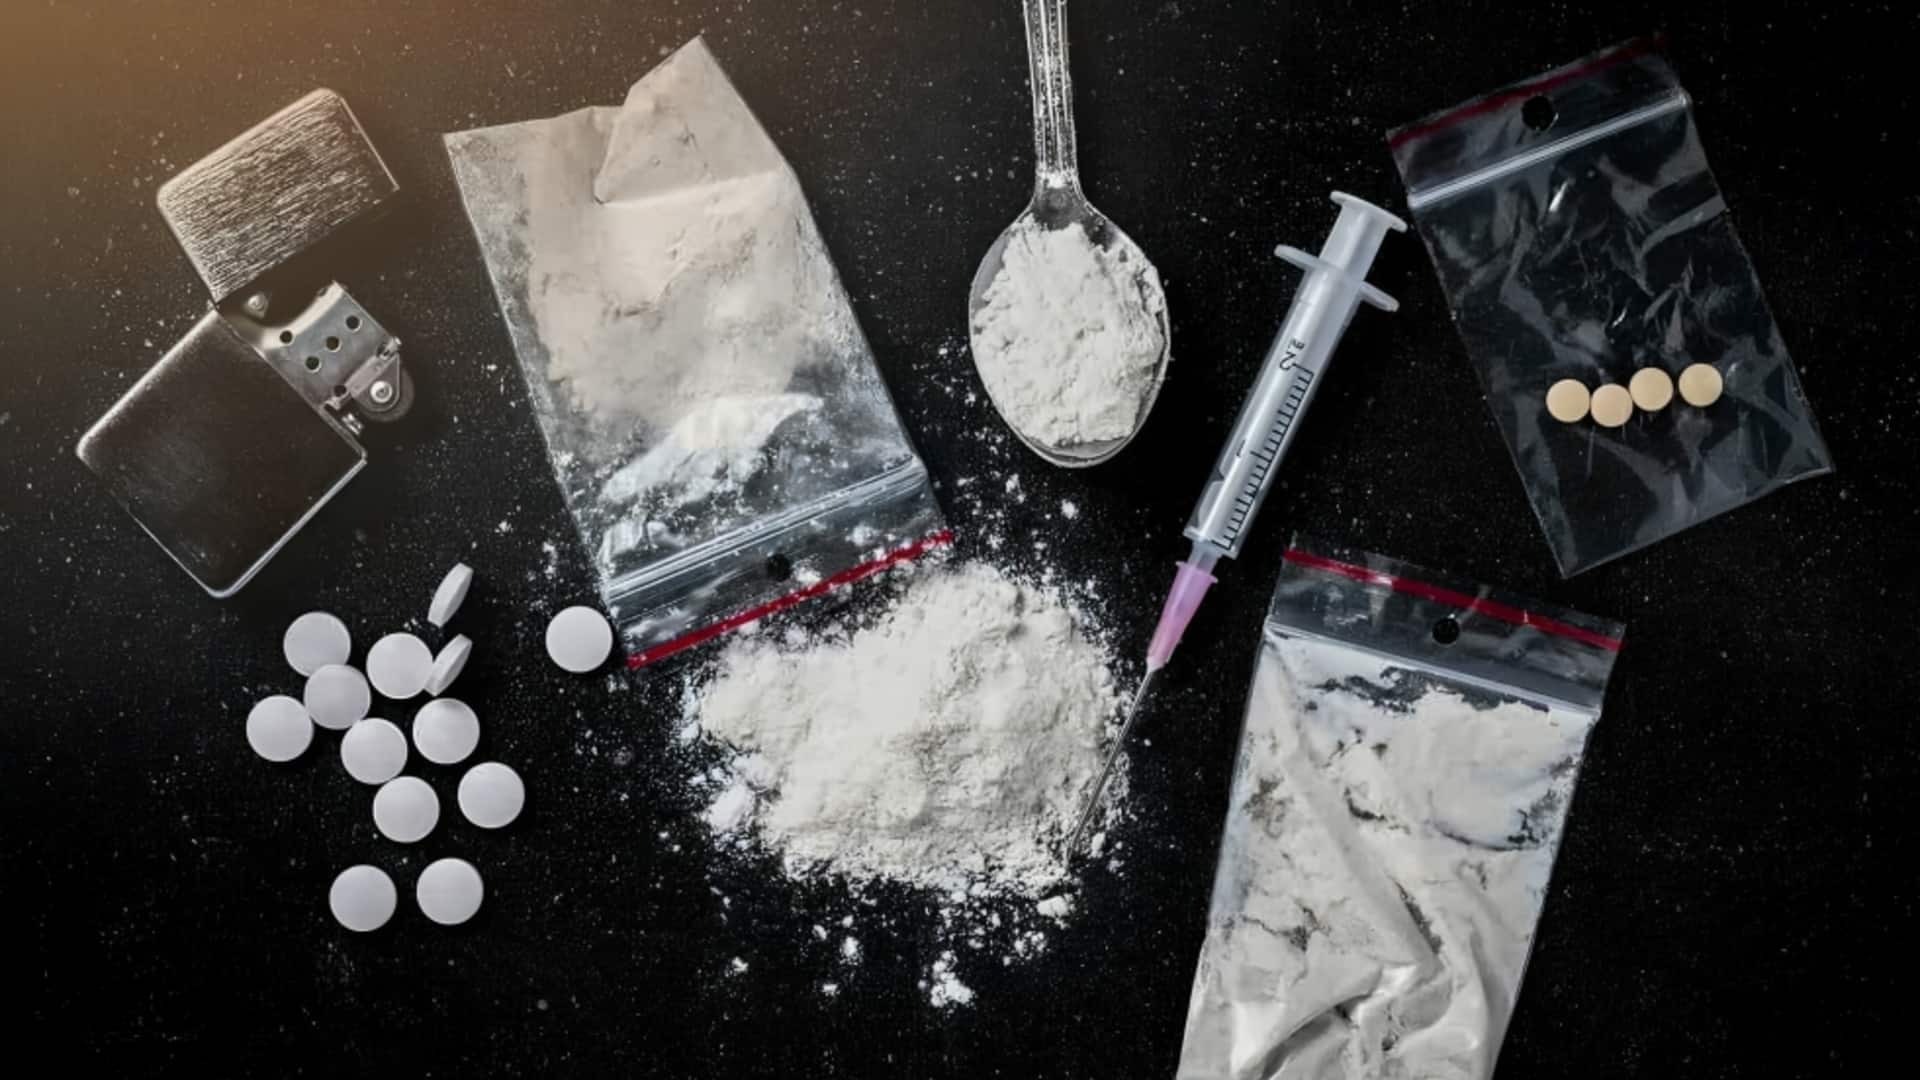 लखनऊ: 2 दोस्तों ने रोमांच के लिए ली ड्रग्स की अधिक खुराक, 1 की मौत